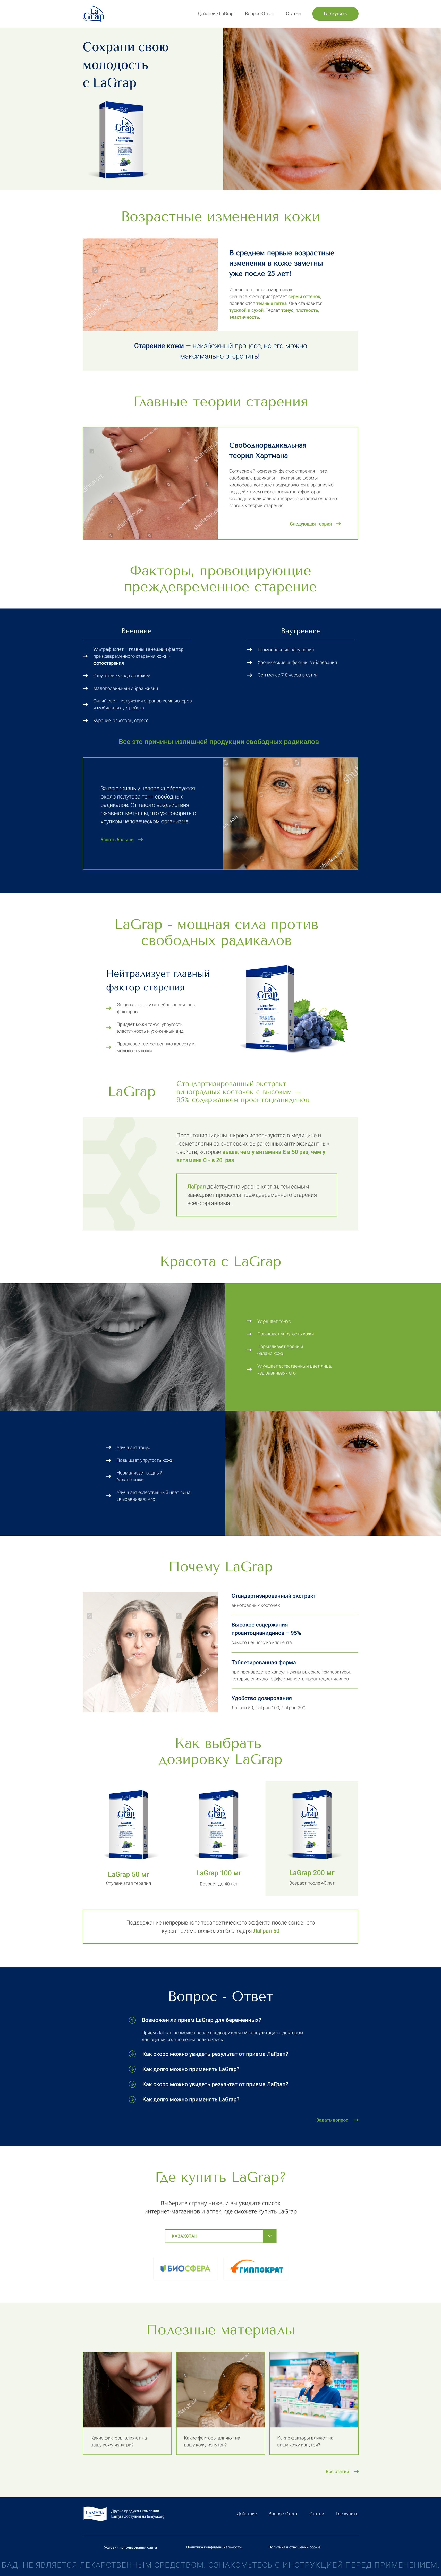 Разработка сайта для косметического средства LaGrap - главная 